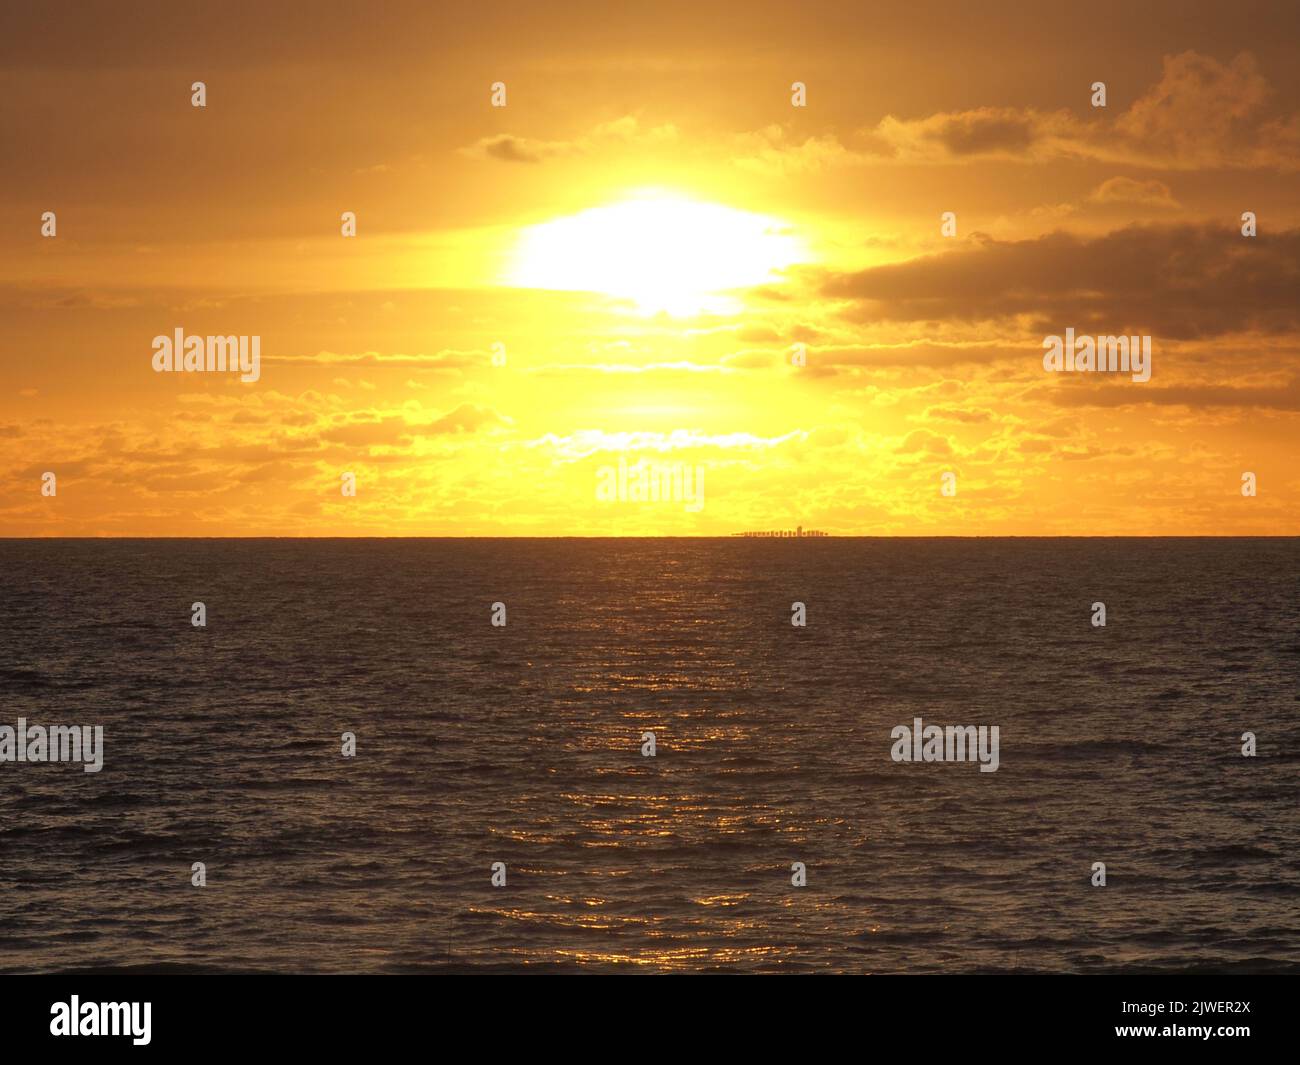 Lever du soleil le long du littoral du New Jersey avec un bateau à conteneurs silhoueté à l'horizon lointain. En direction du port de Newark, la vapeur se dirige lentement vers le nord. Banque D'Images